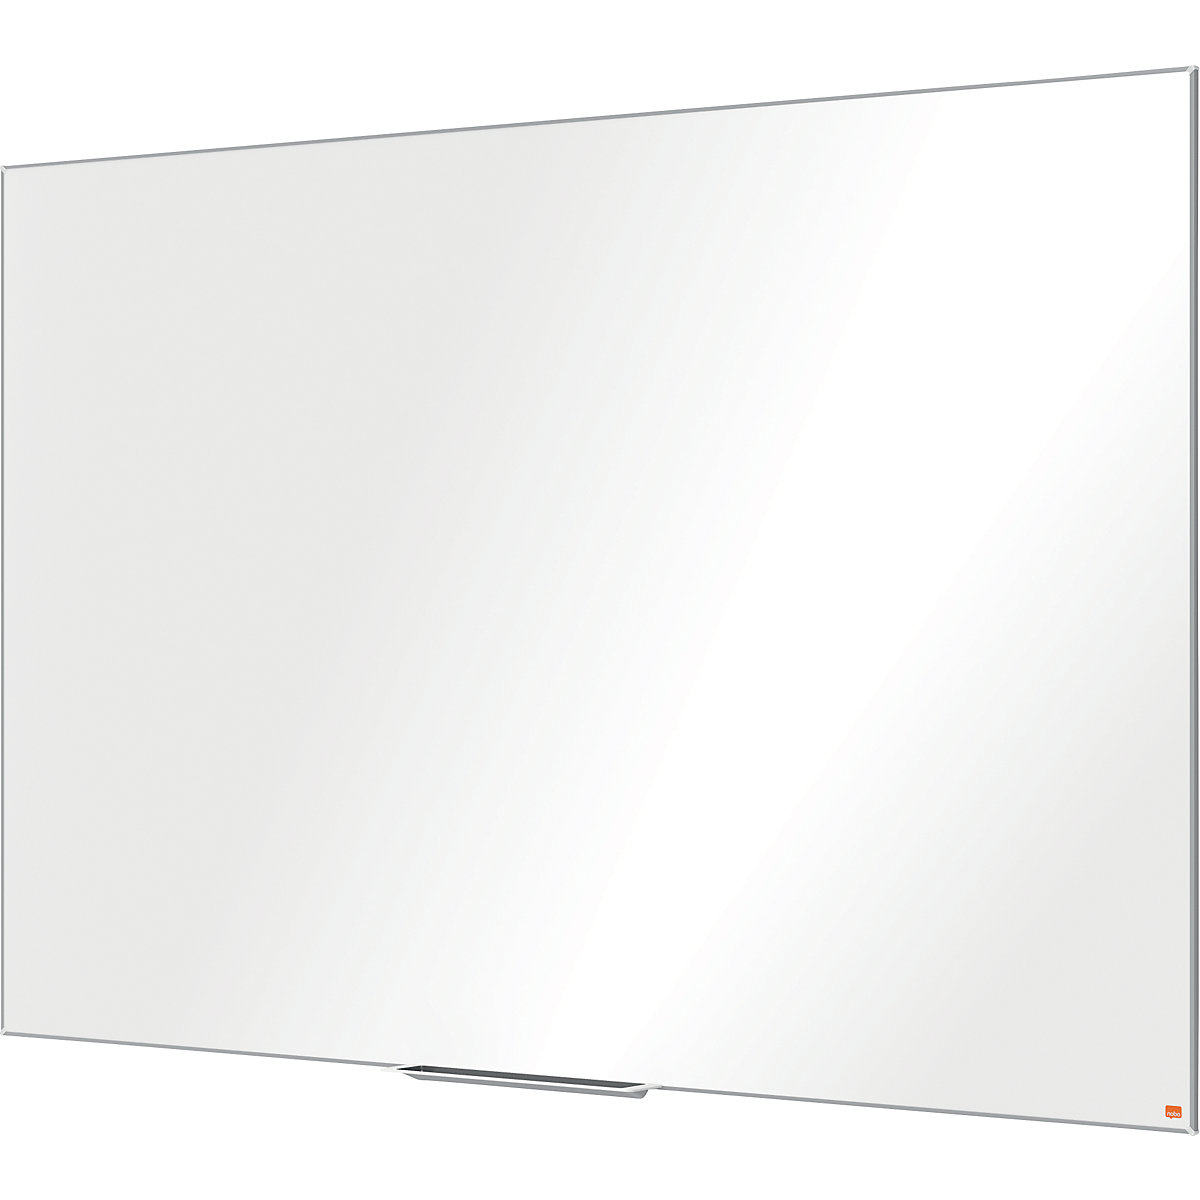 PRO whiteboard – nobo, steel, enamelled, WxH 1800 x 1200 mm-6